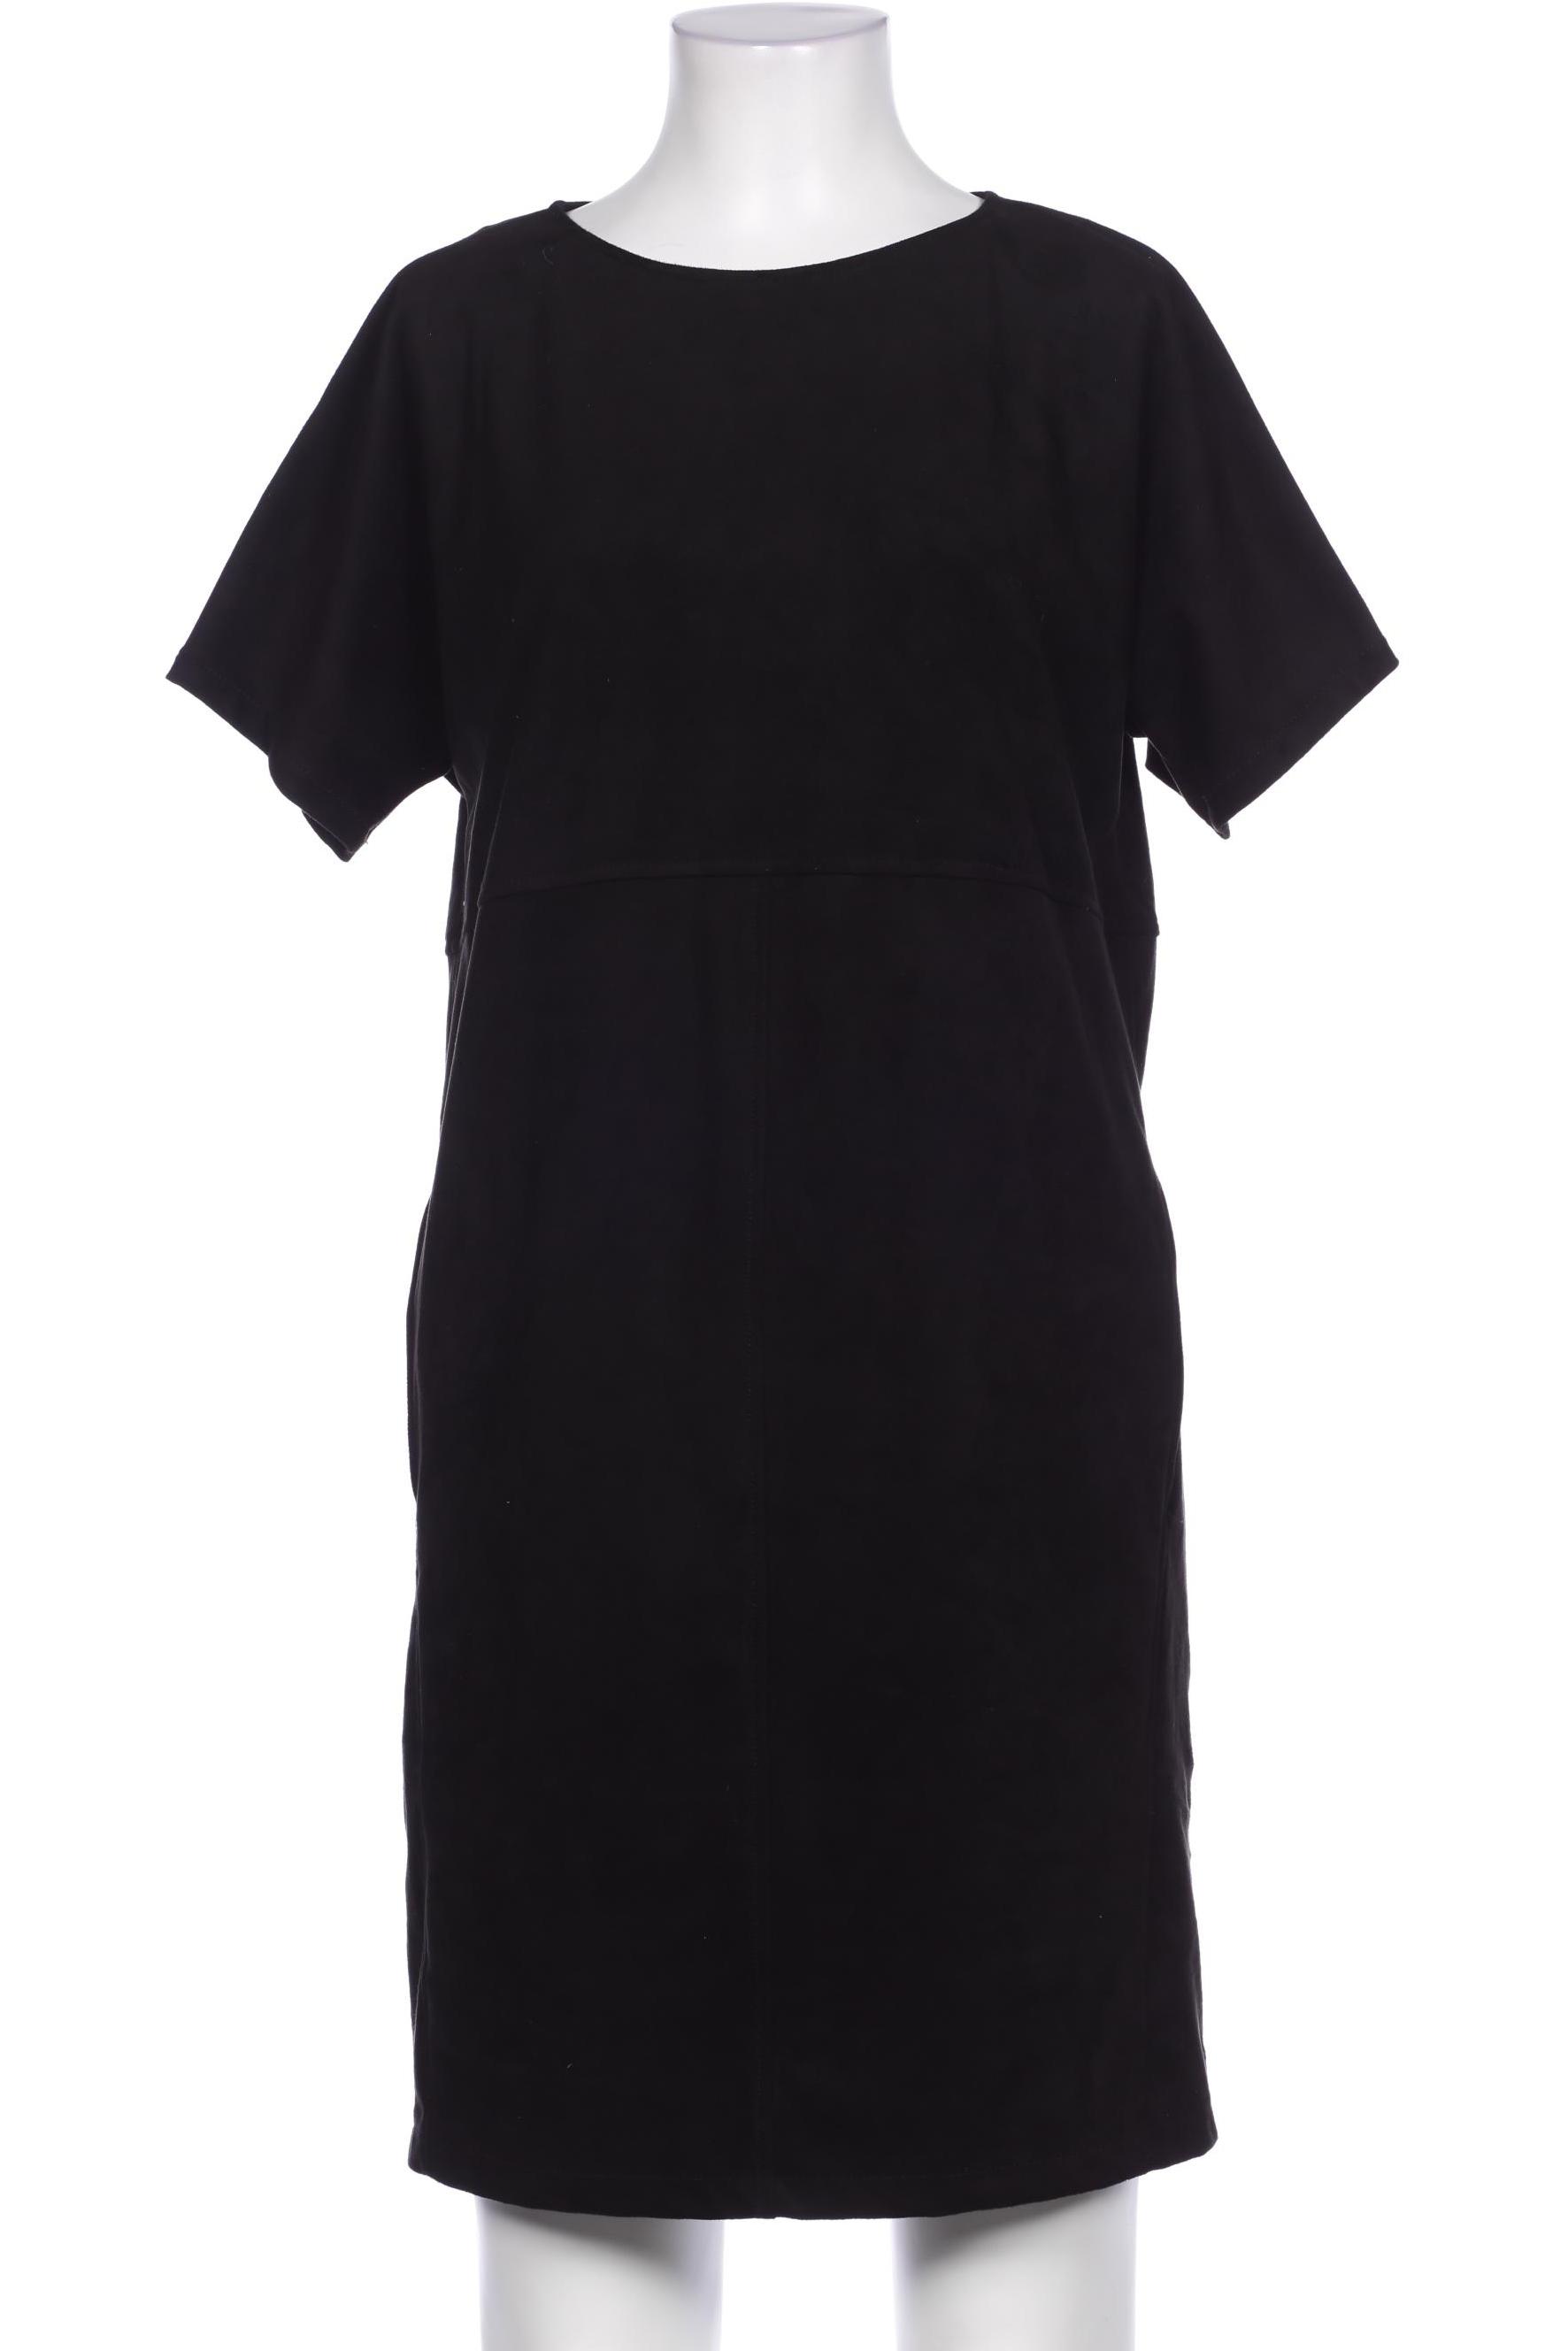 Esprit Damen Kleid, schwarz von Esprit